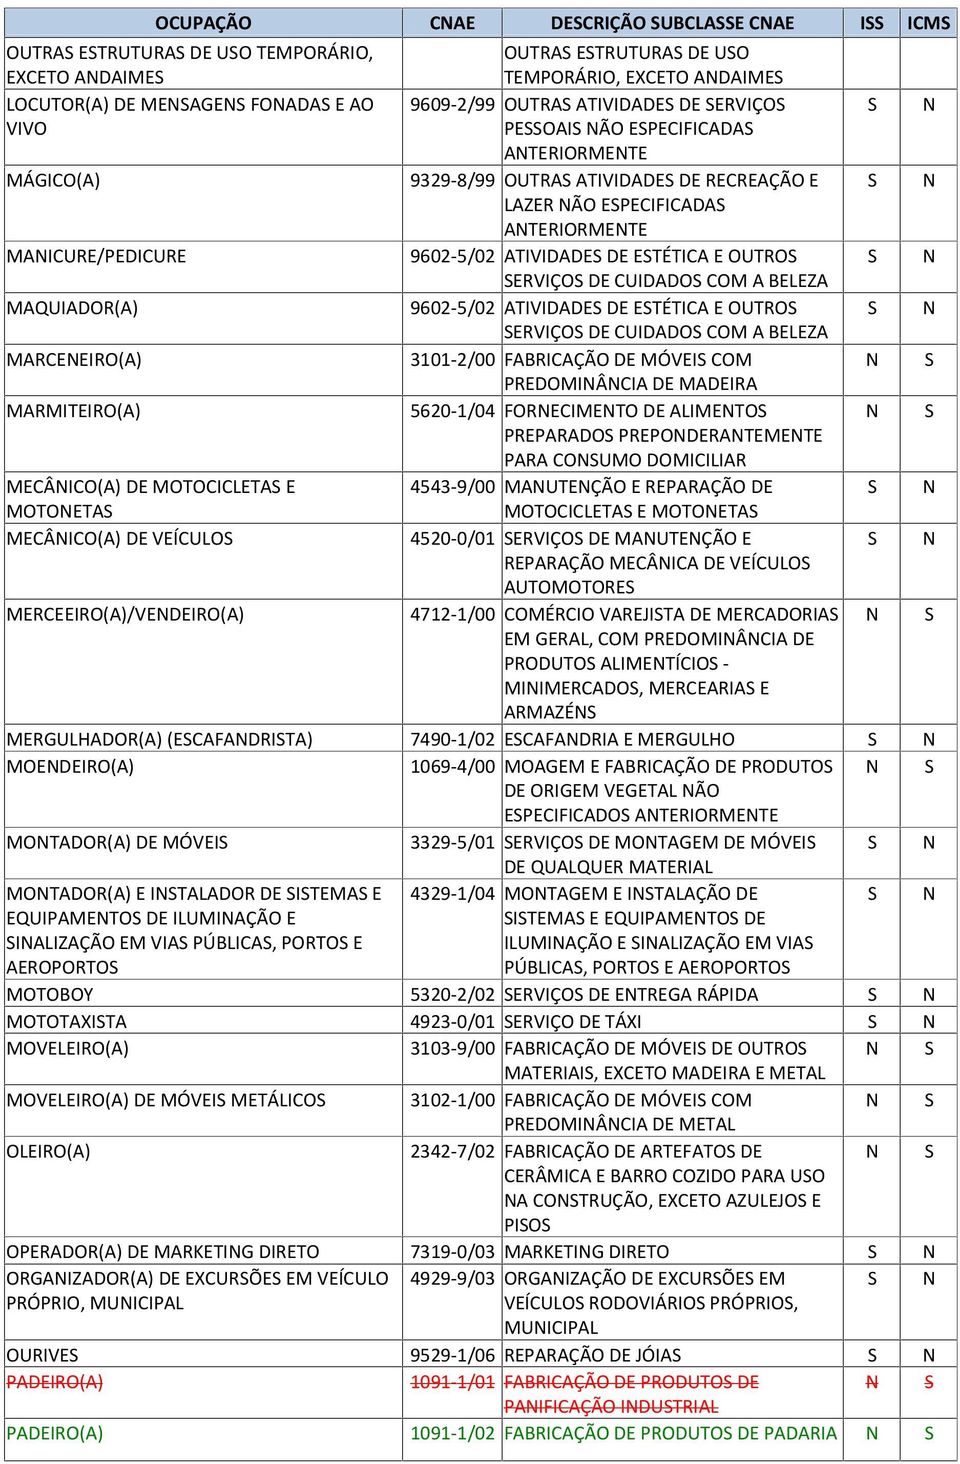 A BELEZA MAQUIADOR(A) 9602-5/02 ATIVIDADE DE ETÉTICA E OUTRO ERVIÇO DE CUIDADO COM A BELEZA MARCEEIRO(A) 3101-2/00 FABRICAÇÃO DE MÓVEI COM PREDOMIÂCIA DE MADEIRA MARMITEIRO(A) 5620-1/04 FORECIMETO DE